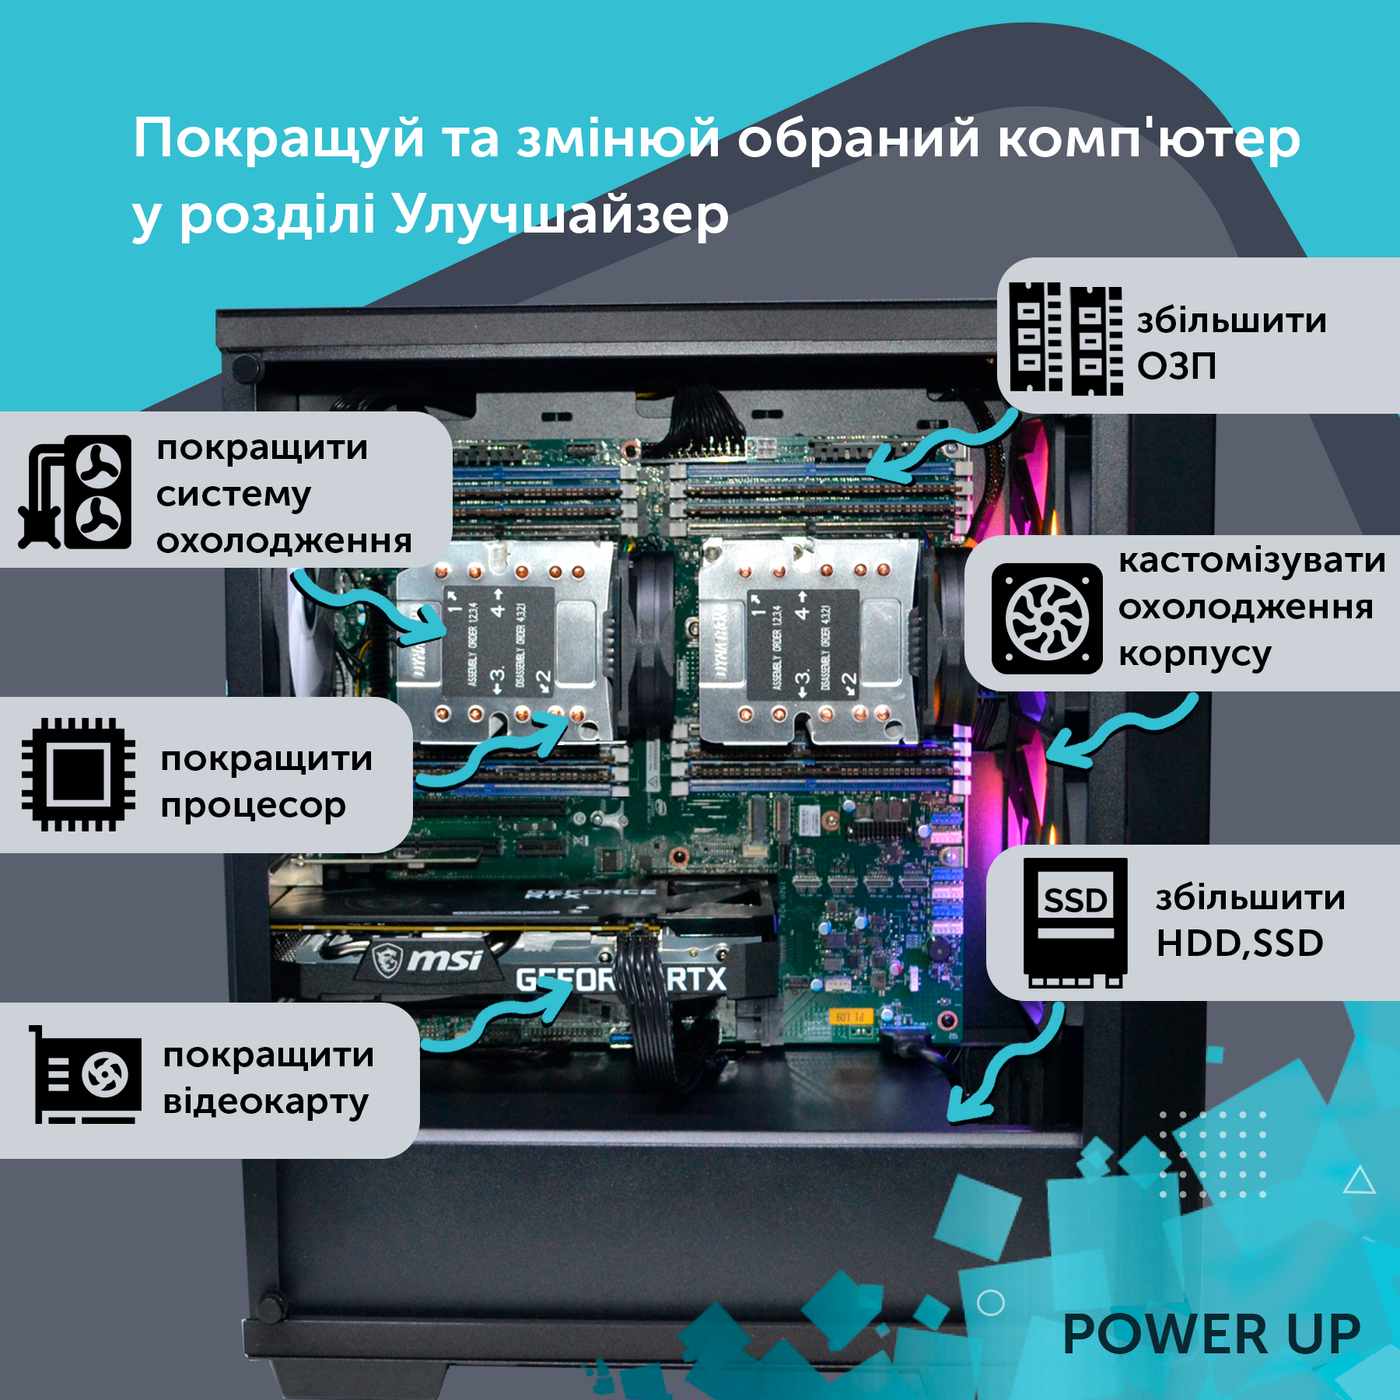 Робоча станція PowerUp Desktop #136 Ryzen 9 5900x/32GB/HDD 1TB/SSD 512GB/GeForce RTX 3070 8GB